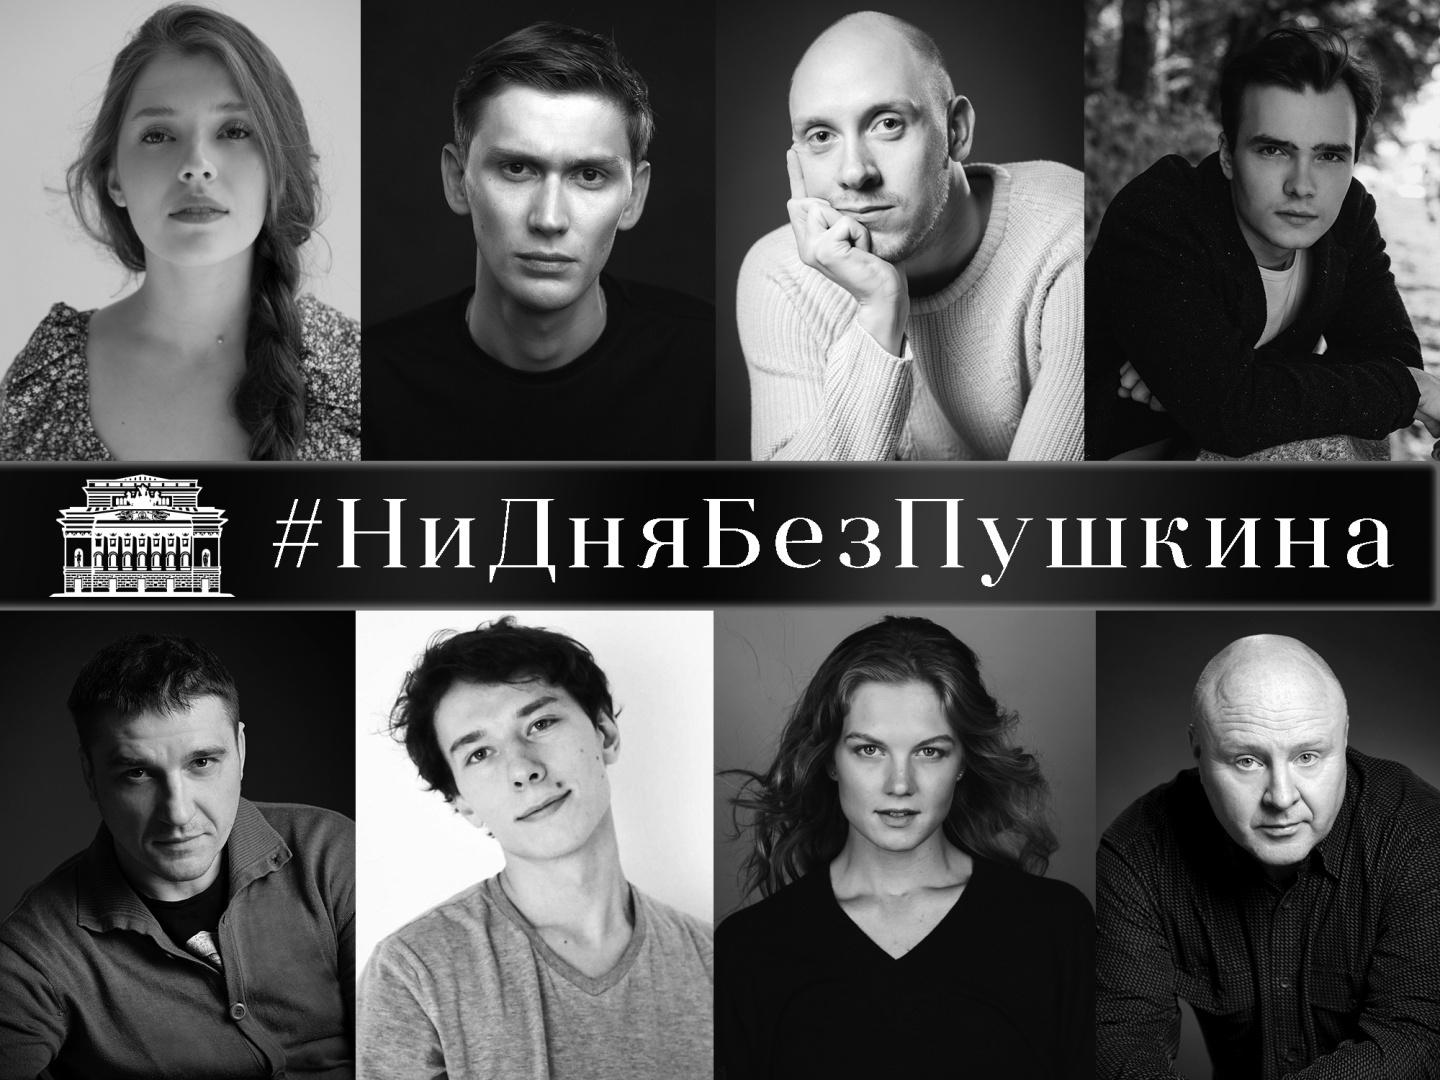 Обложка - Артисты Александринки запустили акцию ко дню рождения Пушкина